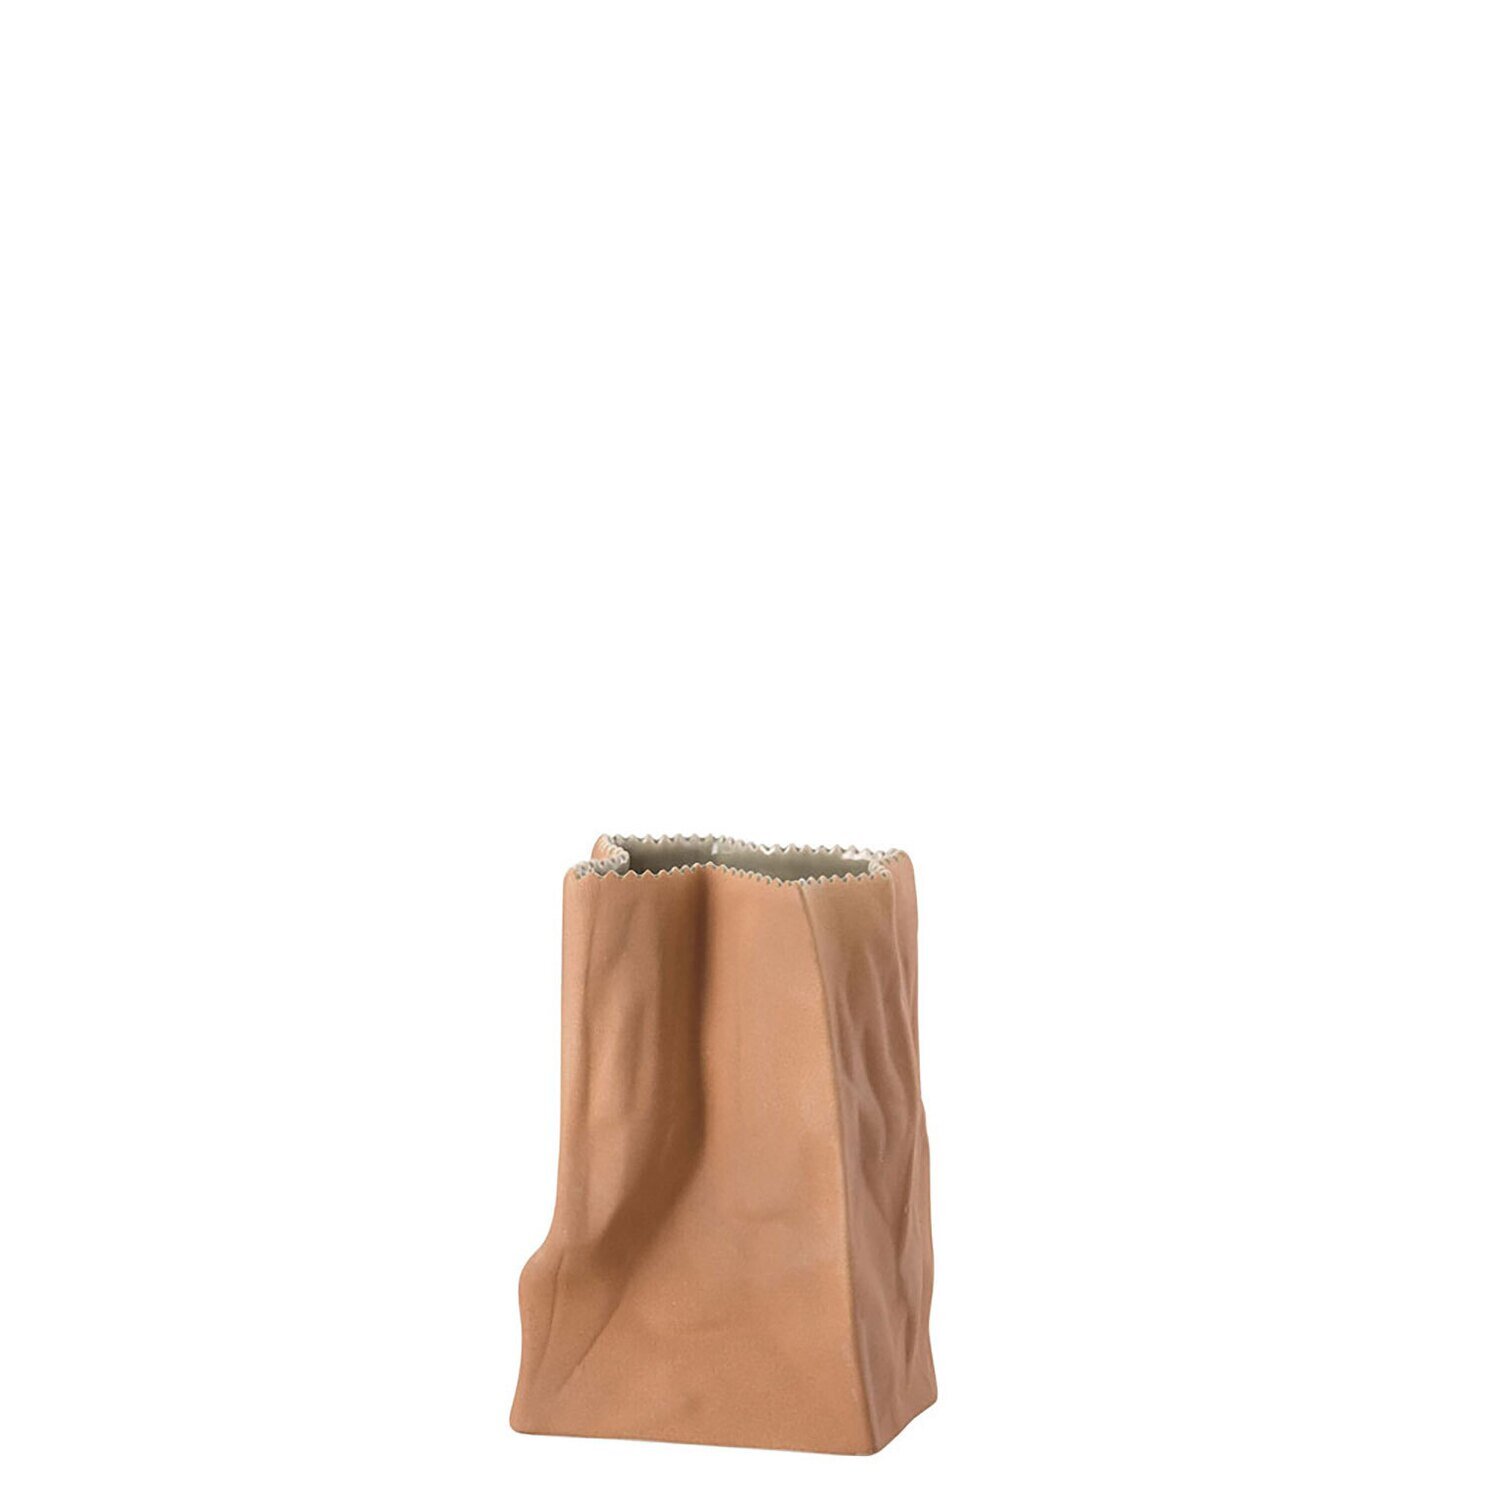 Rosenthal Bag Vase Vase Light Brown 5 1/2 Inch